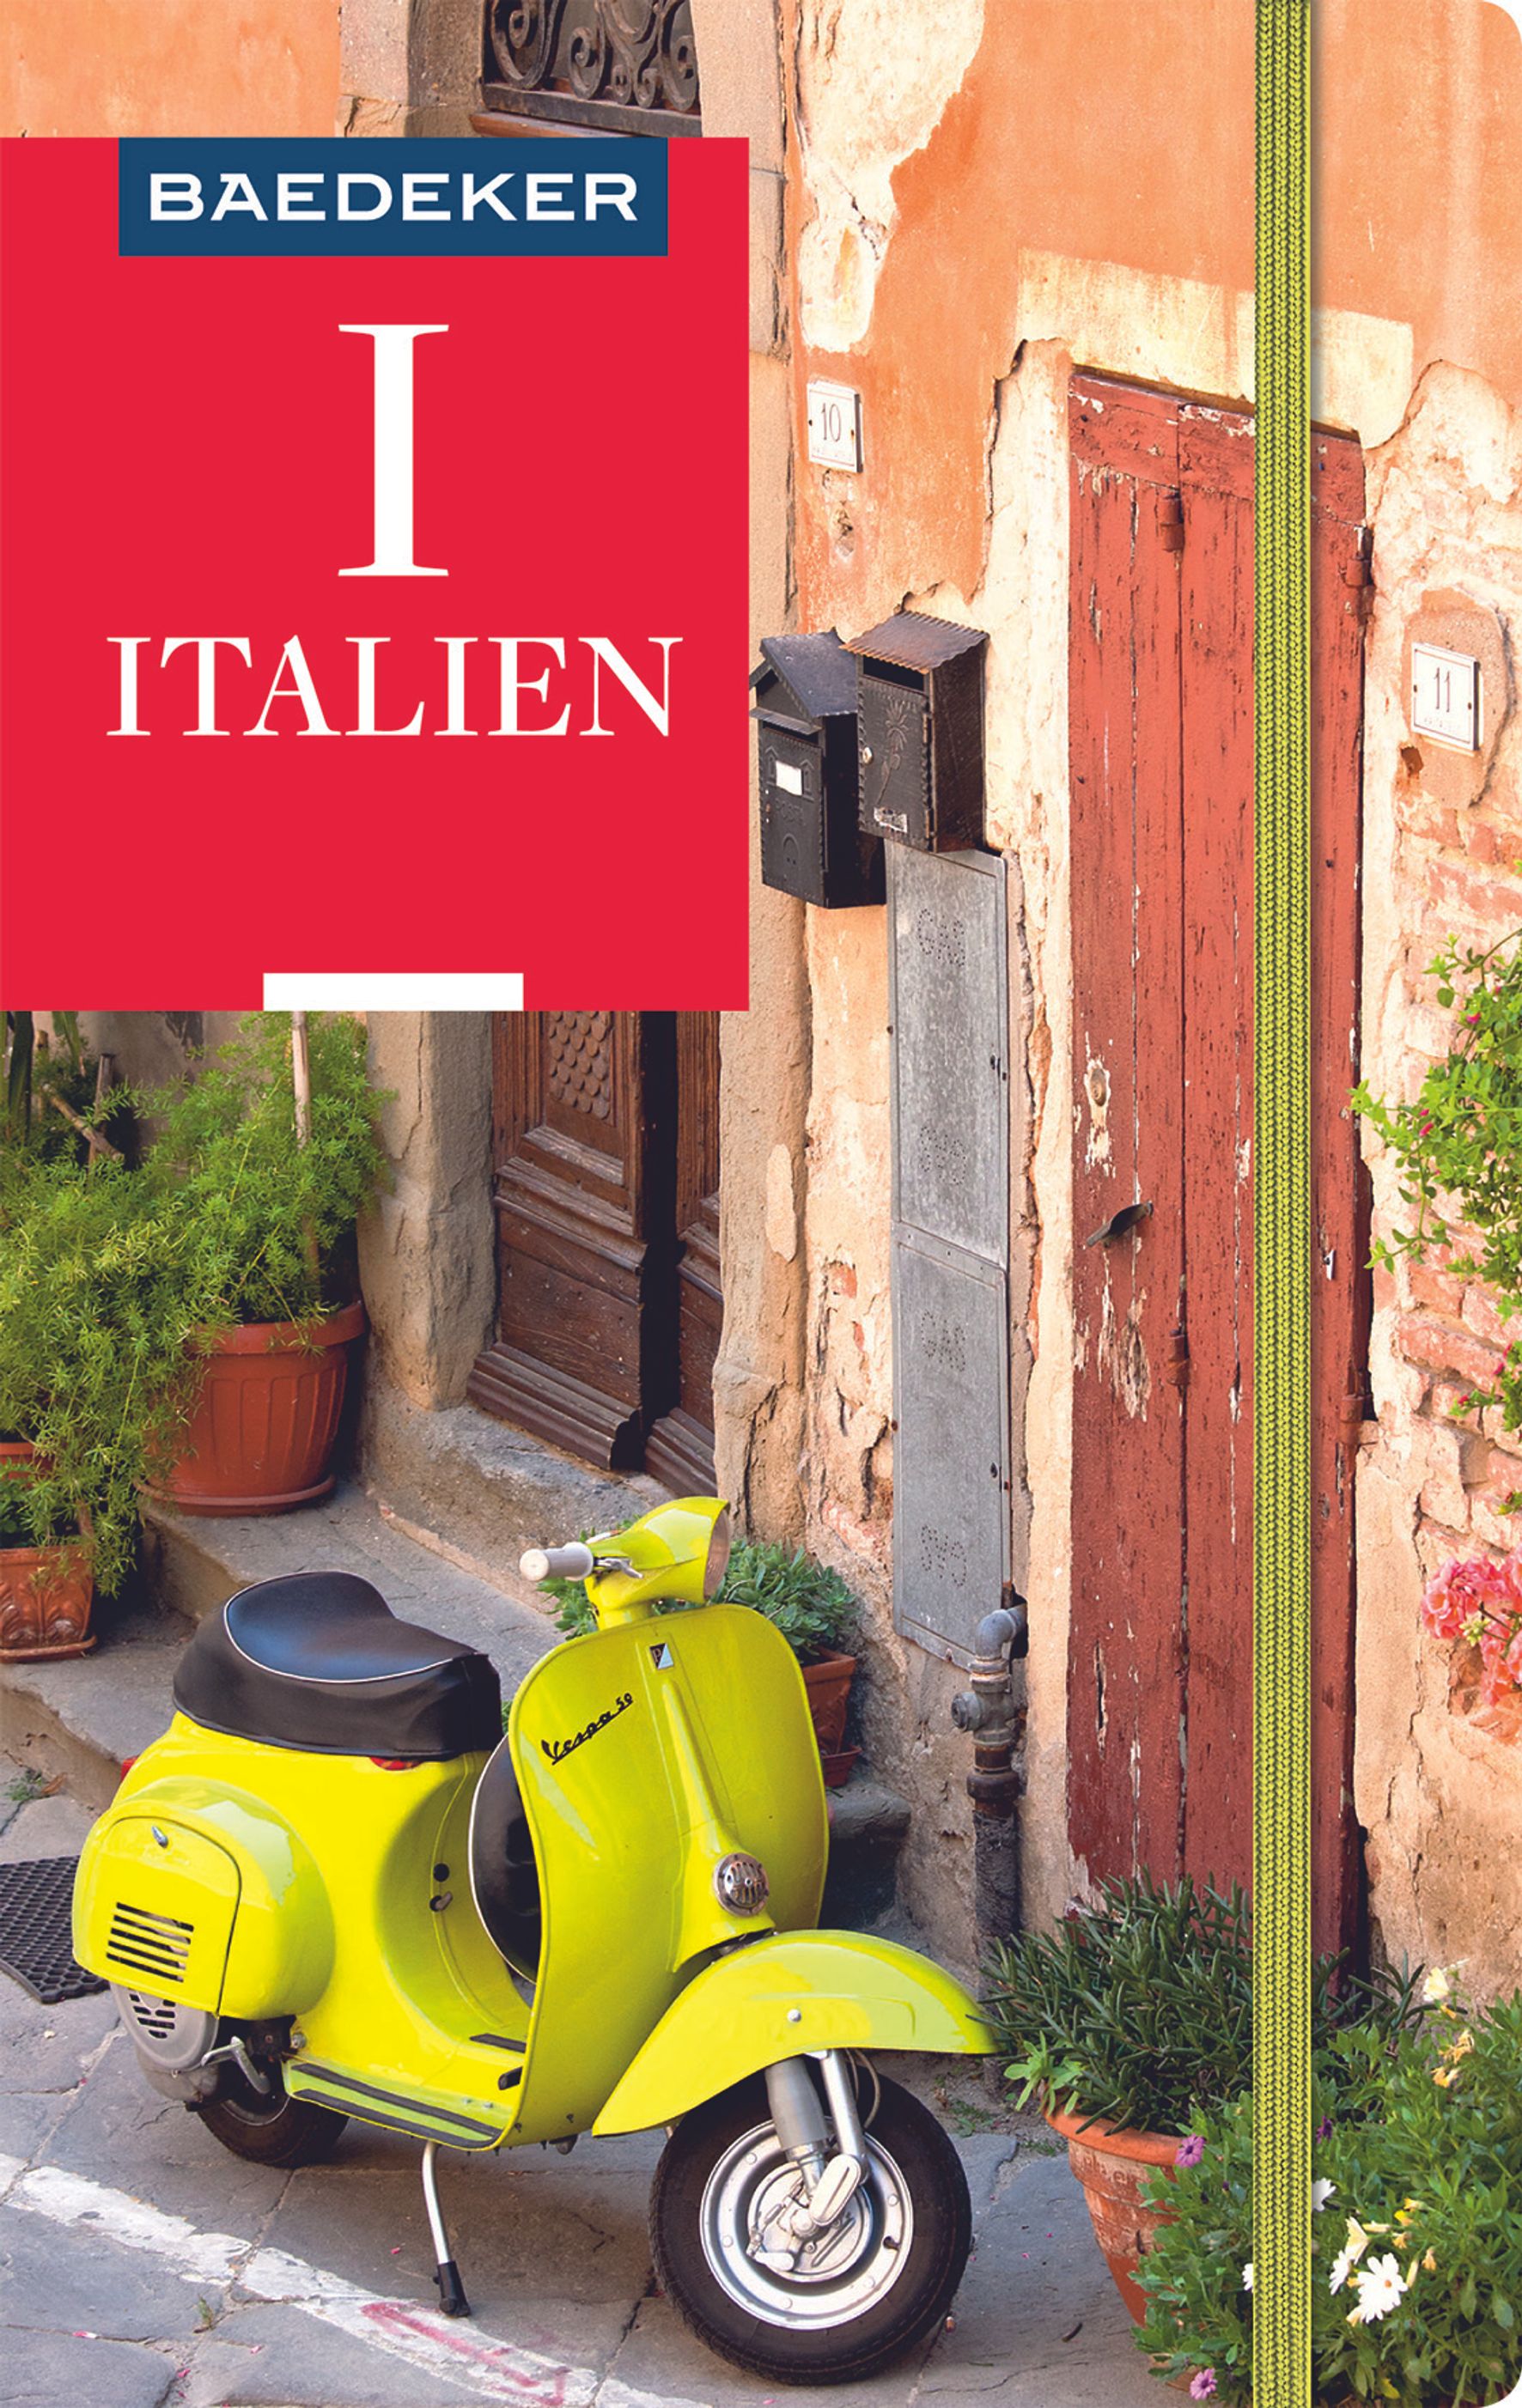 Baedeker Italien (eBook)